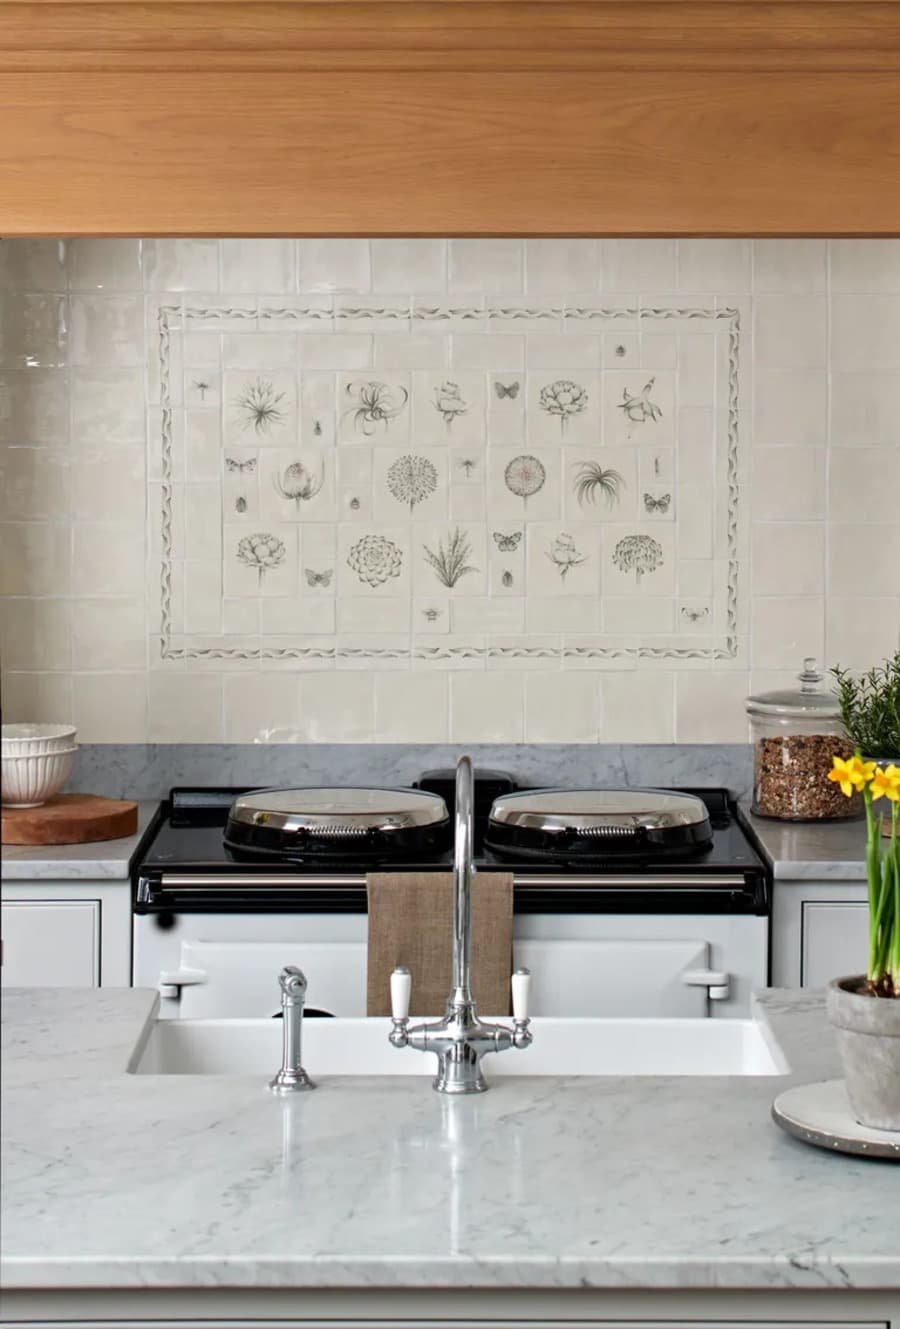 Cocina clásica con muro con azulejos color beige verdoso. Al centro hay un diseño con azulejos pintados  mano con flores, mariposas y hojas. Muebles de cocina blancos, grifería cromada estilo vintage.